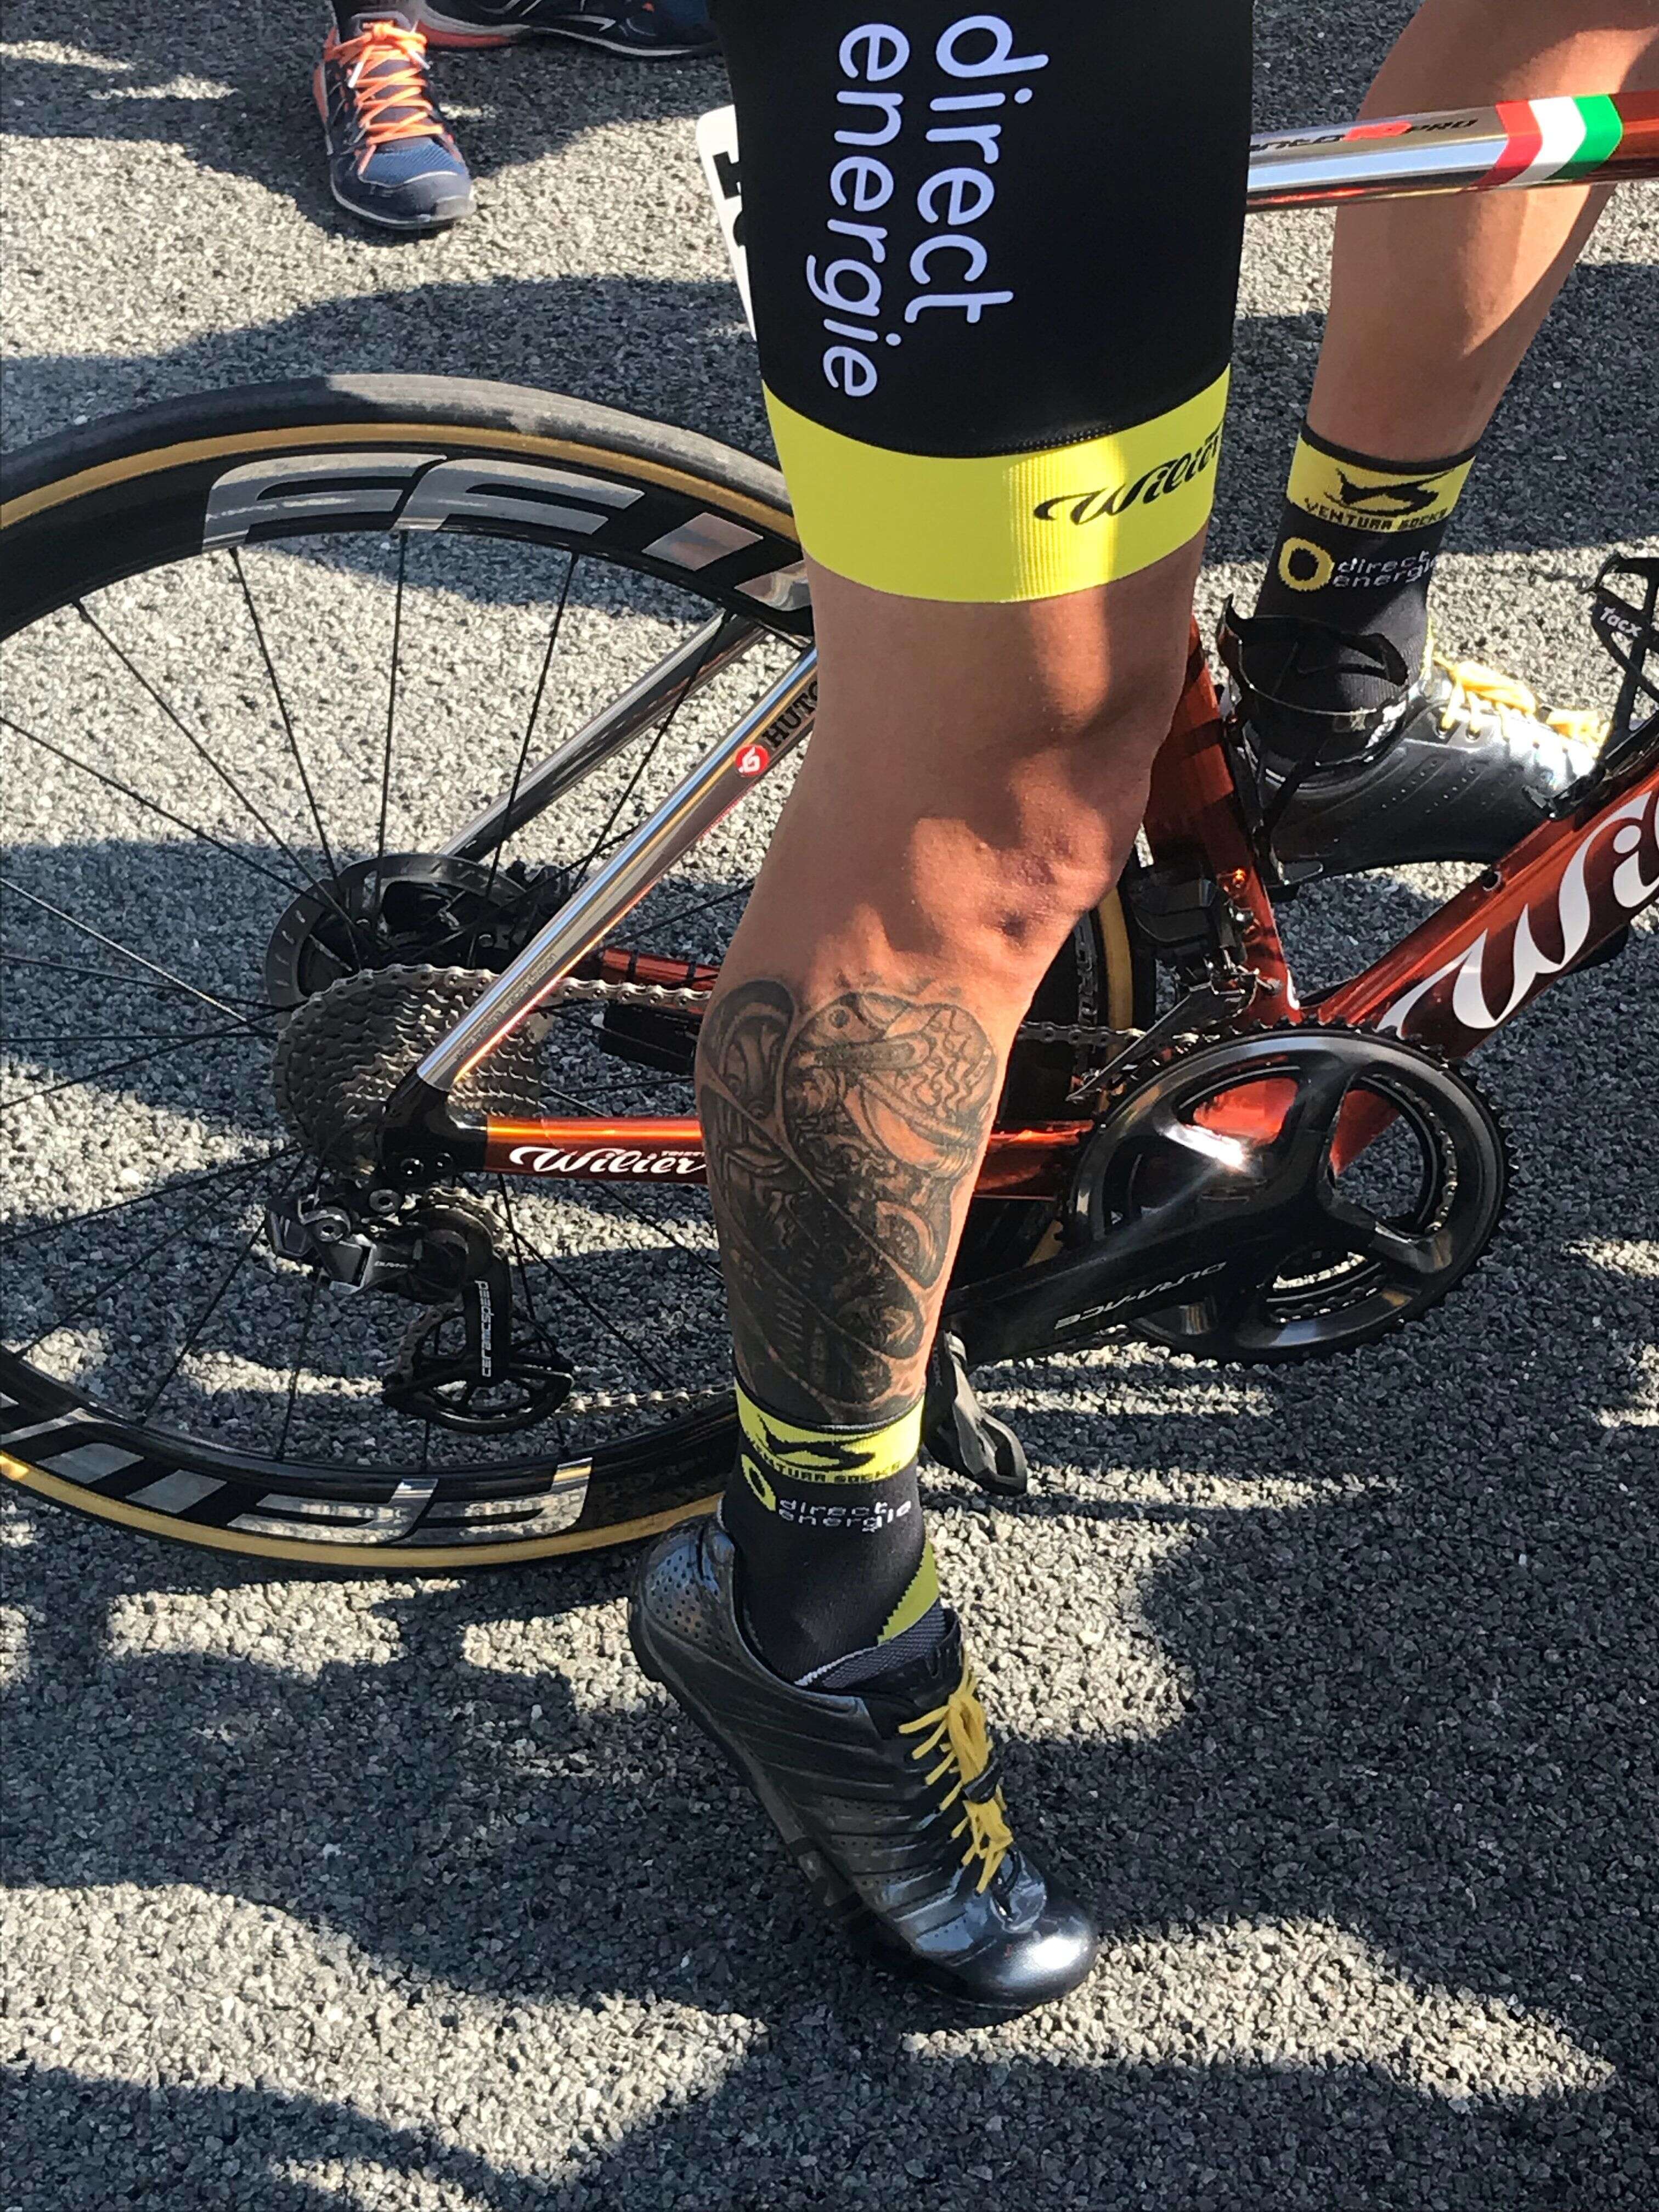 Le vélo de Sylvain Chavanel pour son dernier Tour est équipé de freins à disques.